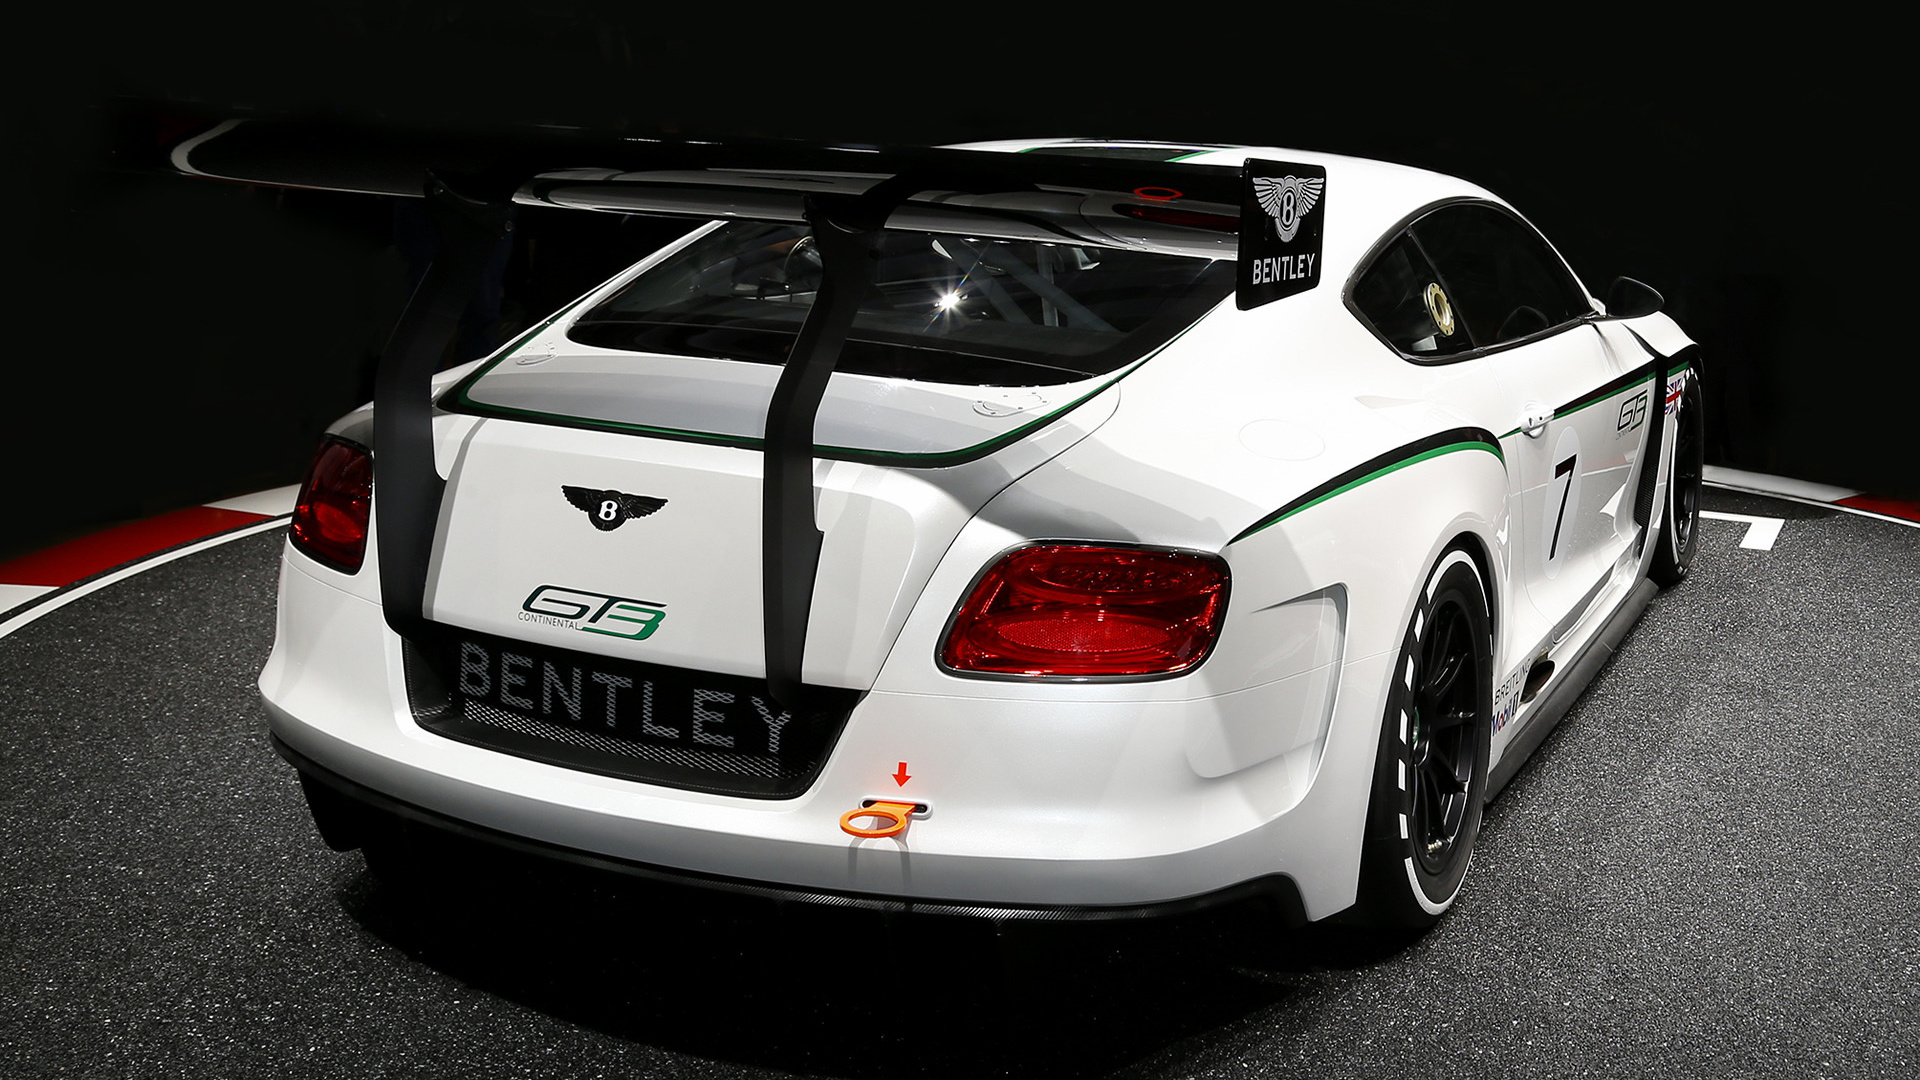 Télécharger des fonds d'écran Concept Bentley Continental Gt3 HD